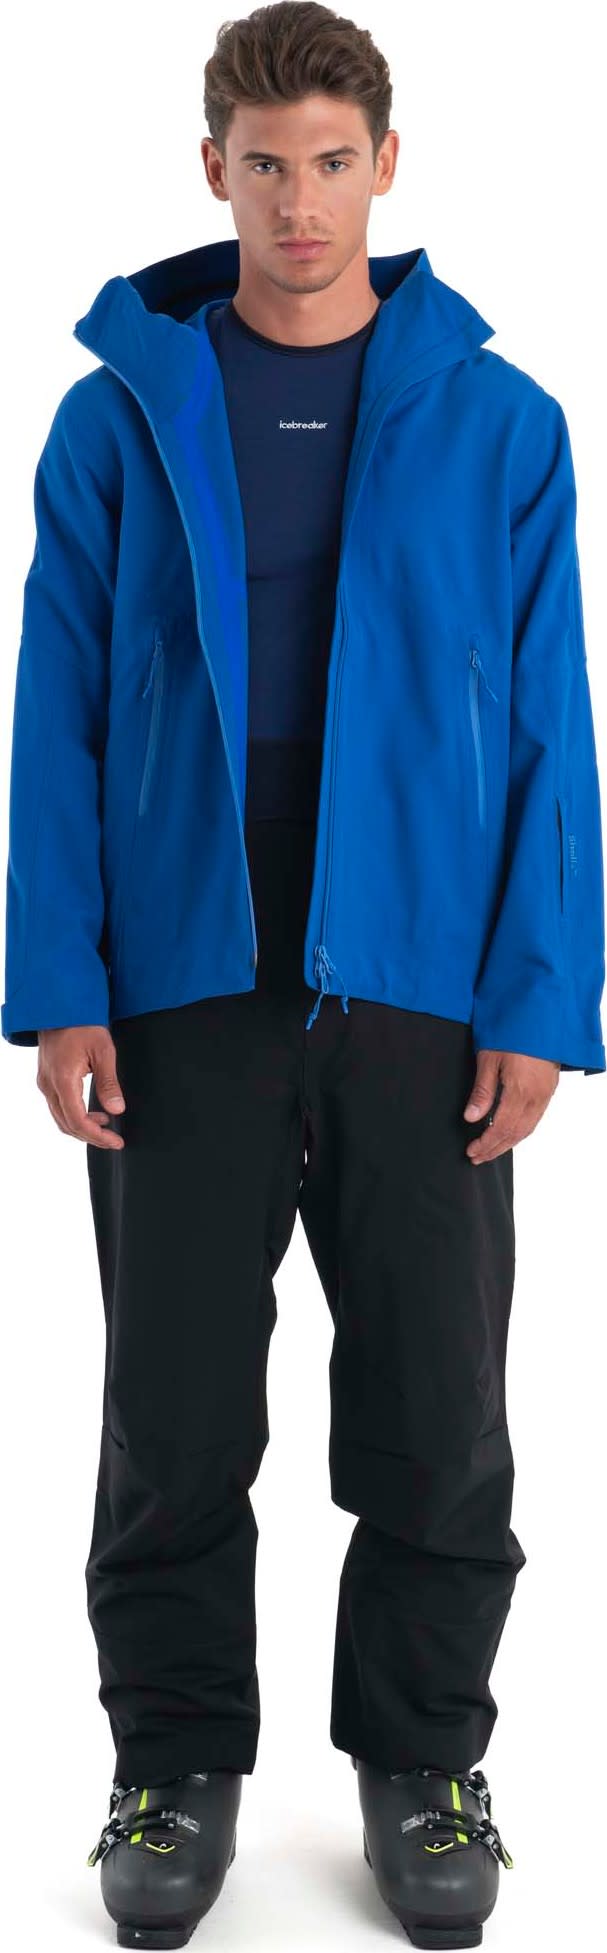 Icebreaker Men's Mer Shell+ Peak Hooded Jacket Lazurite Icebreaker